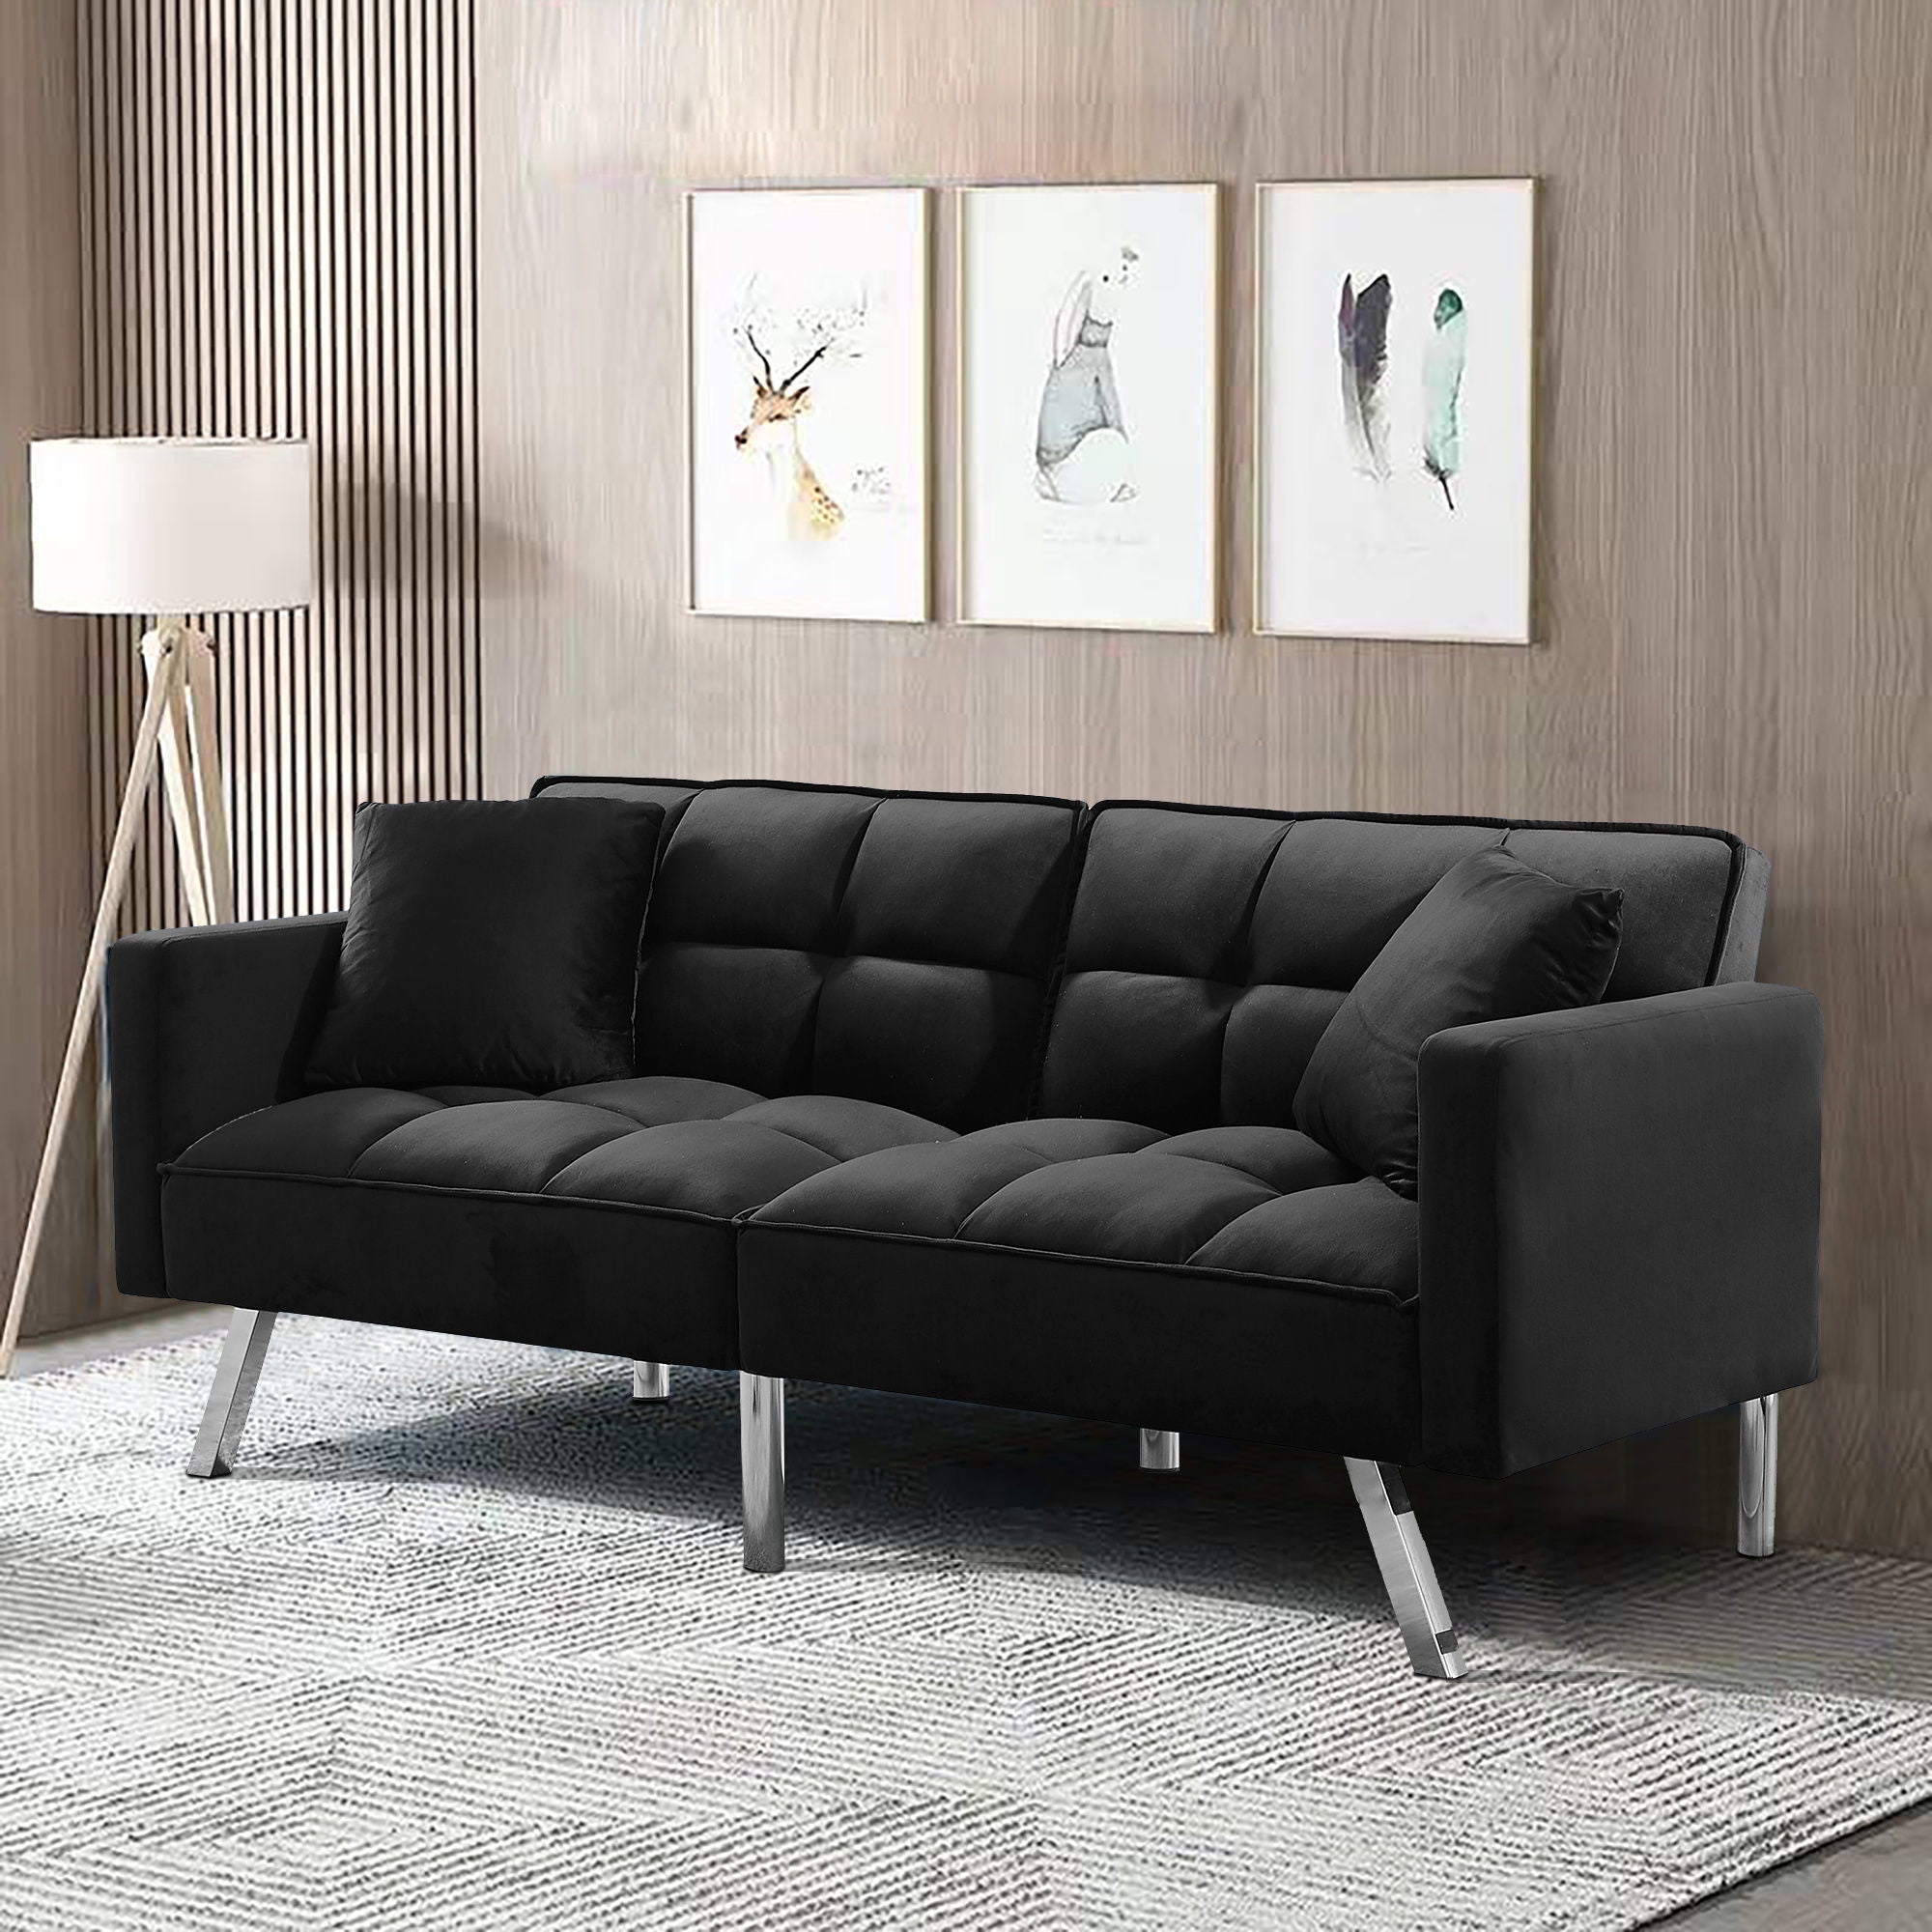 Futon Sofa Sleeper Velvet With 2 Pillows - Black